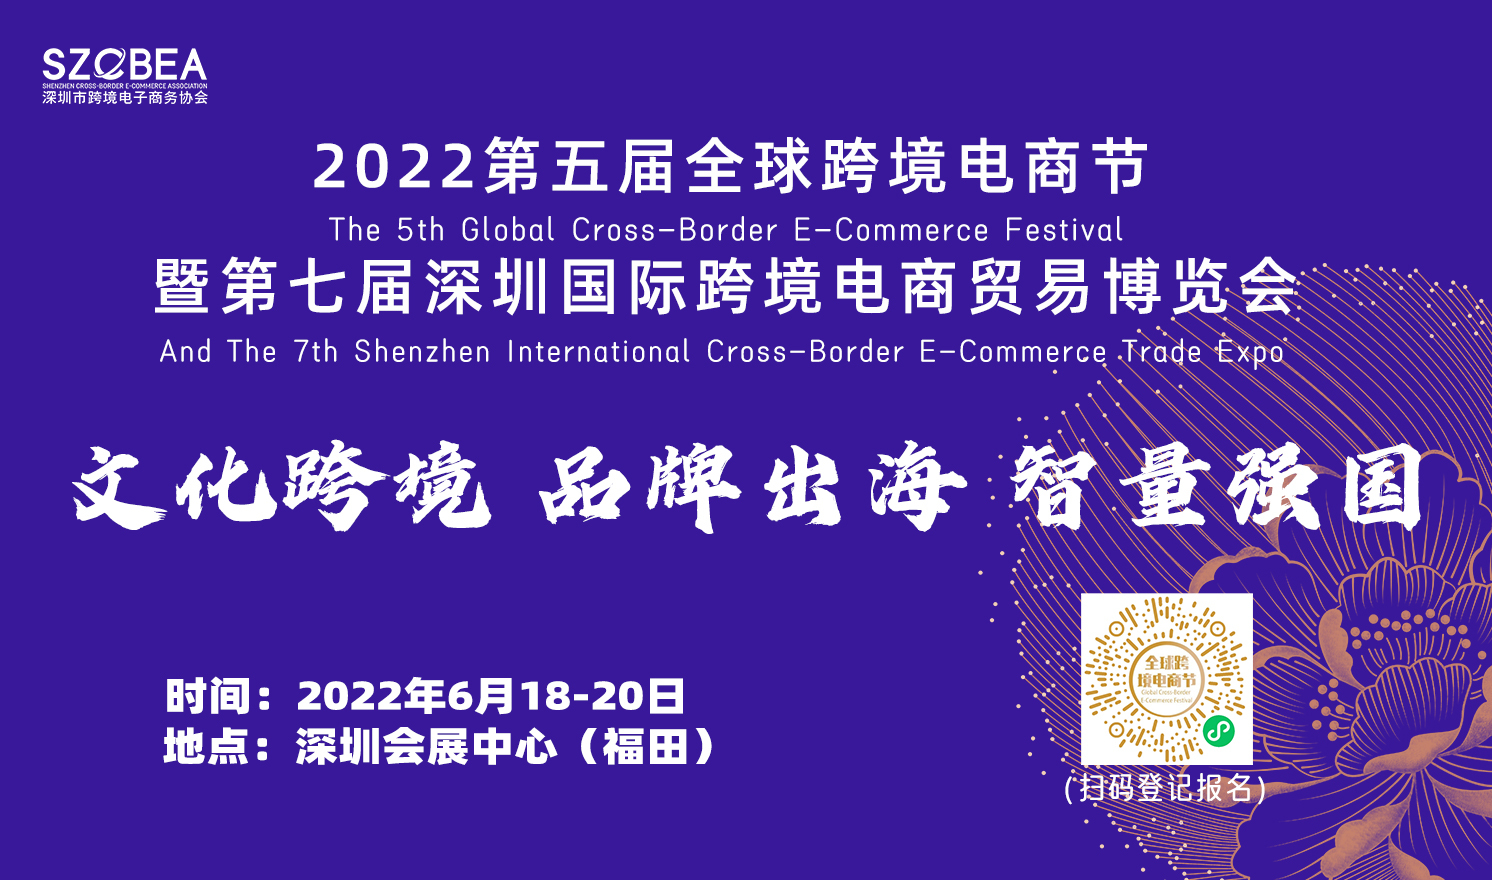 2022第五届全球跨境电商节暨第七届深圳国际跨境电商贸易博览会（2022-06-18至2022-06-20）